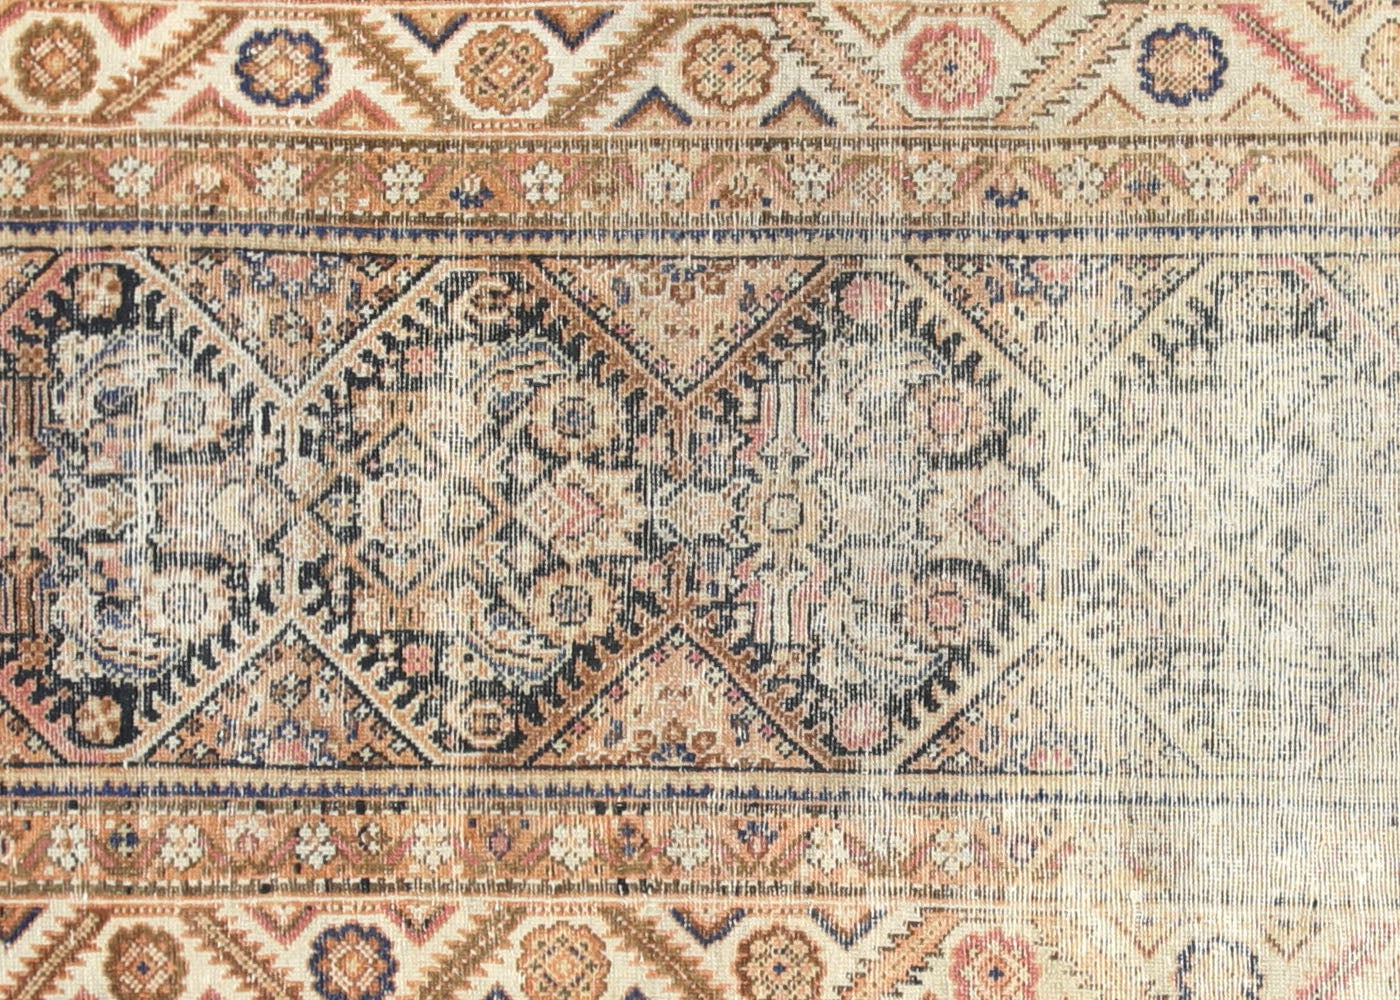 Antique Persian Melayer Runner - 3'4" x 12'10"